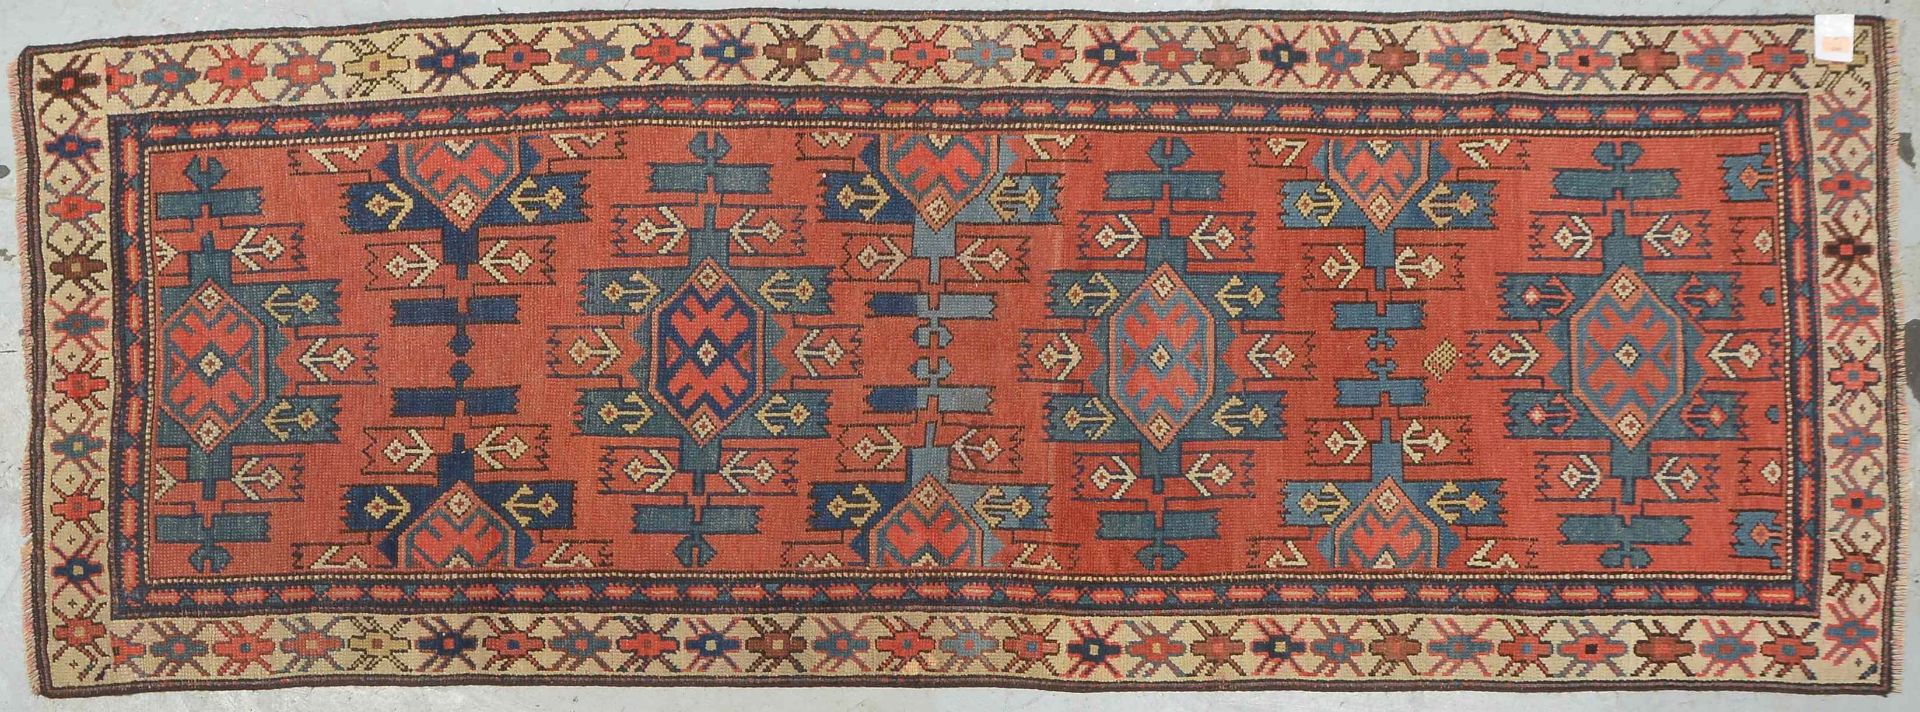 Kaukasische Galerie, antik, Wolle auf Wolle, neu festoniert, Flor gleichmäßig dünn; Maße 245 x 90 cm - Bild 2 aus 4